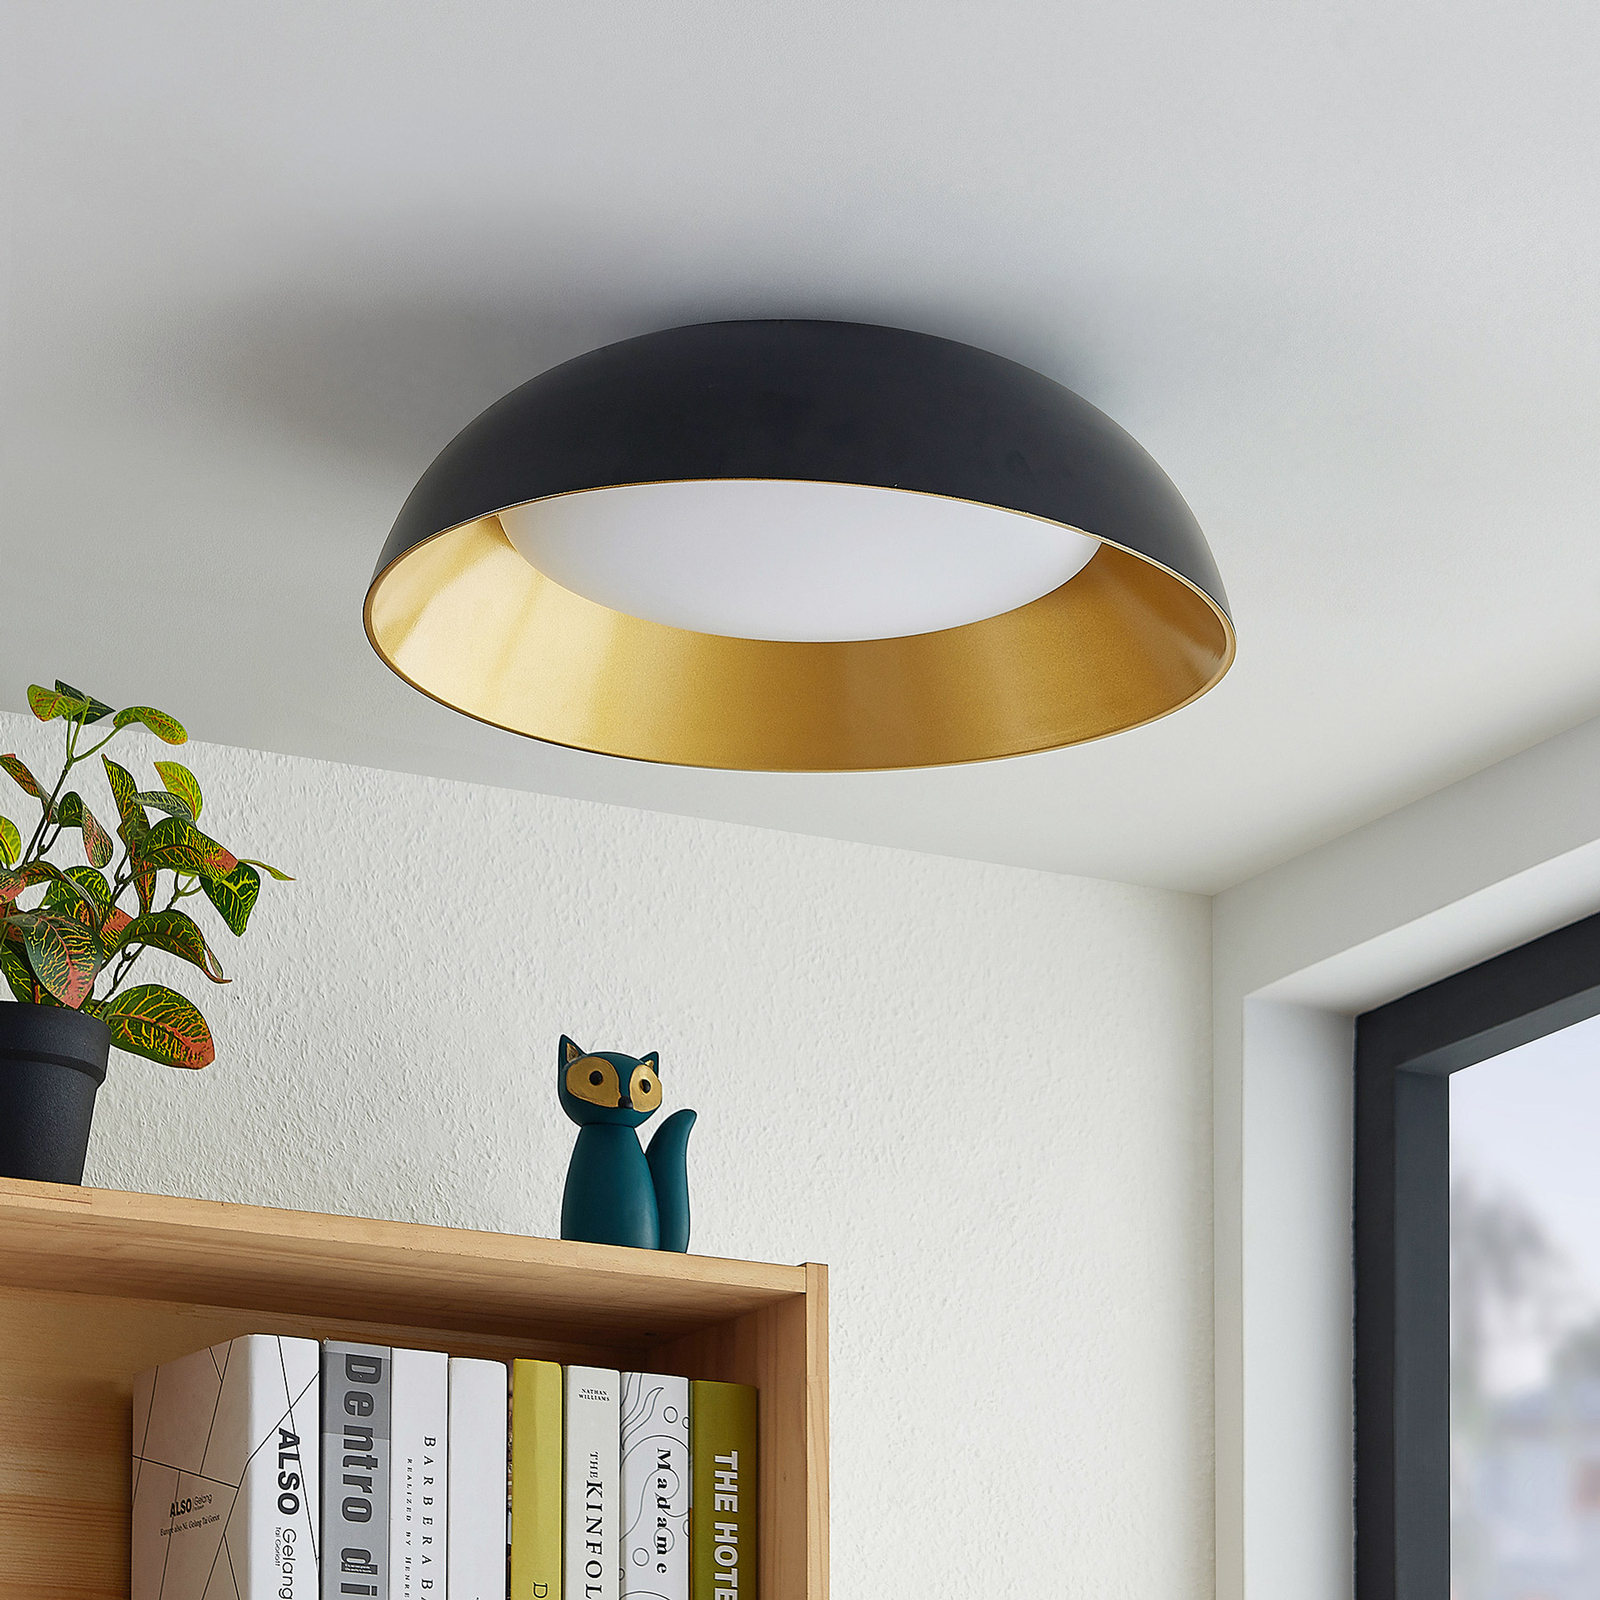 Lindby Juliven plafonnier LED, noir-doré